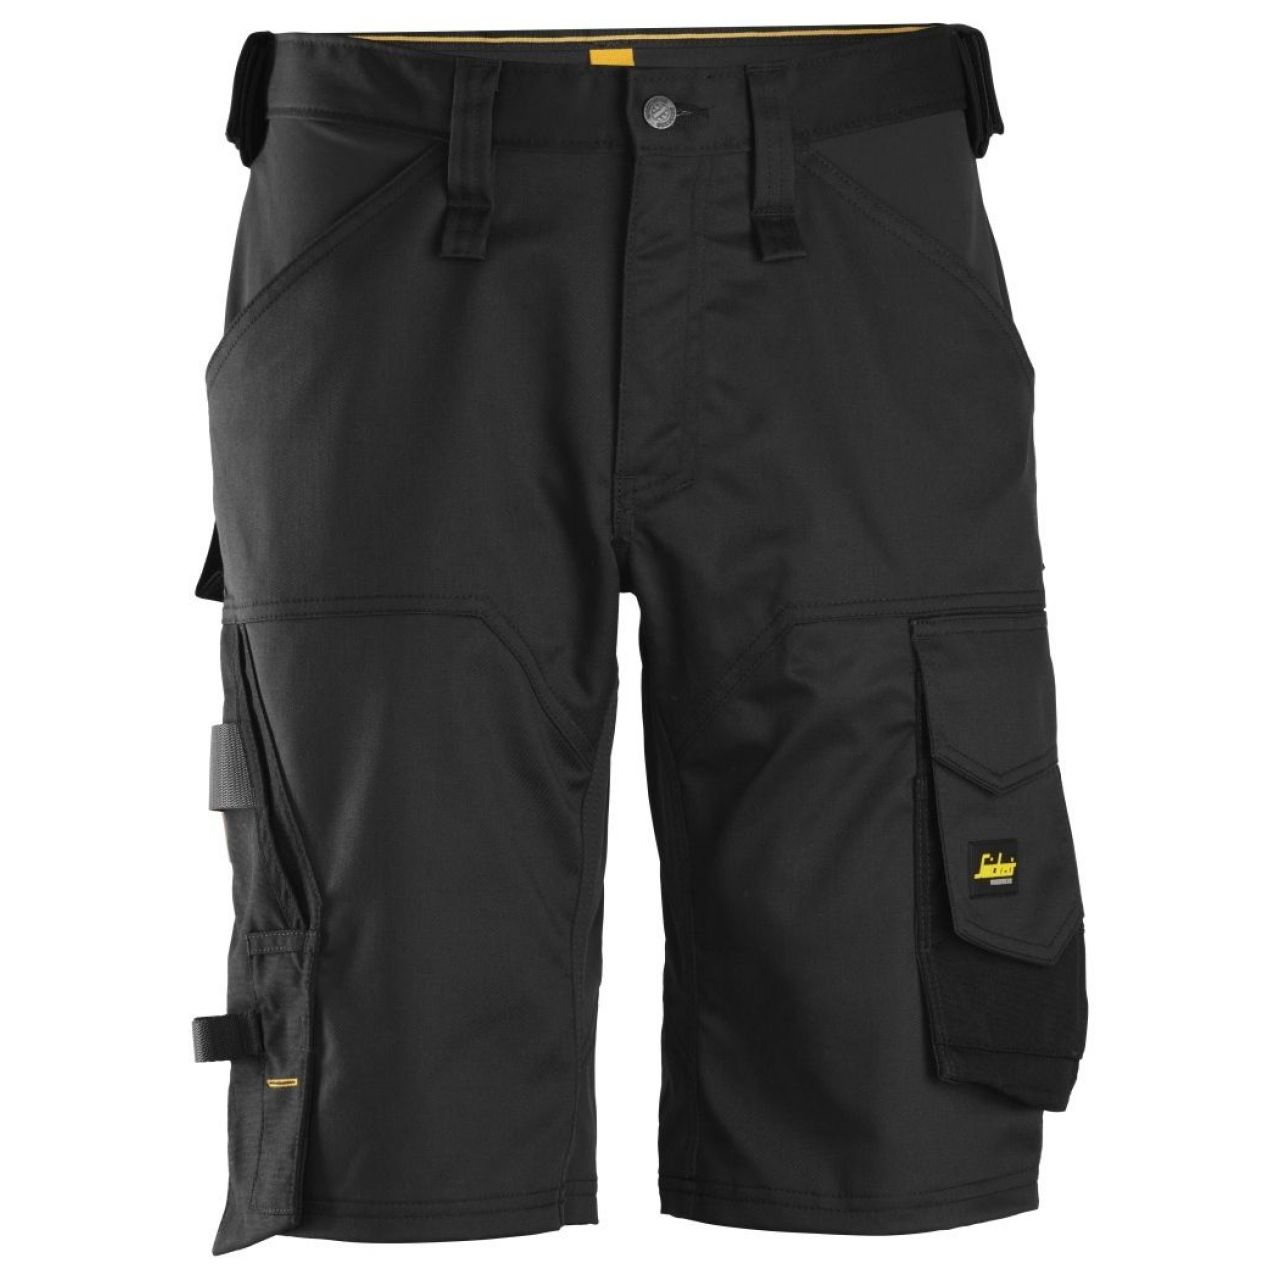 Pantalon corto elastico holgado AllroundWork negro talla 064